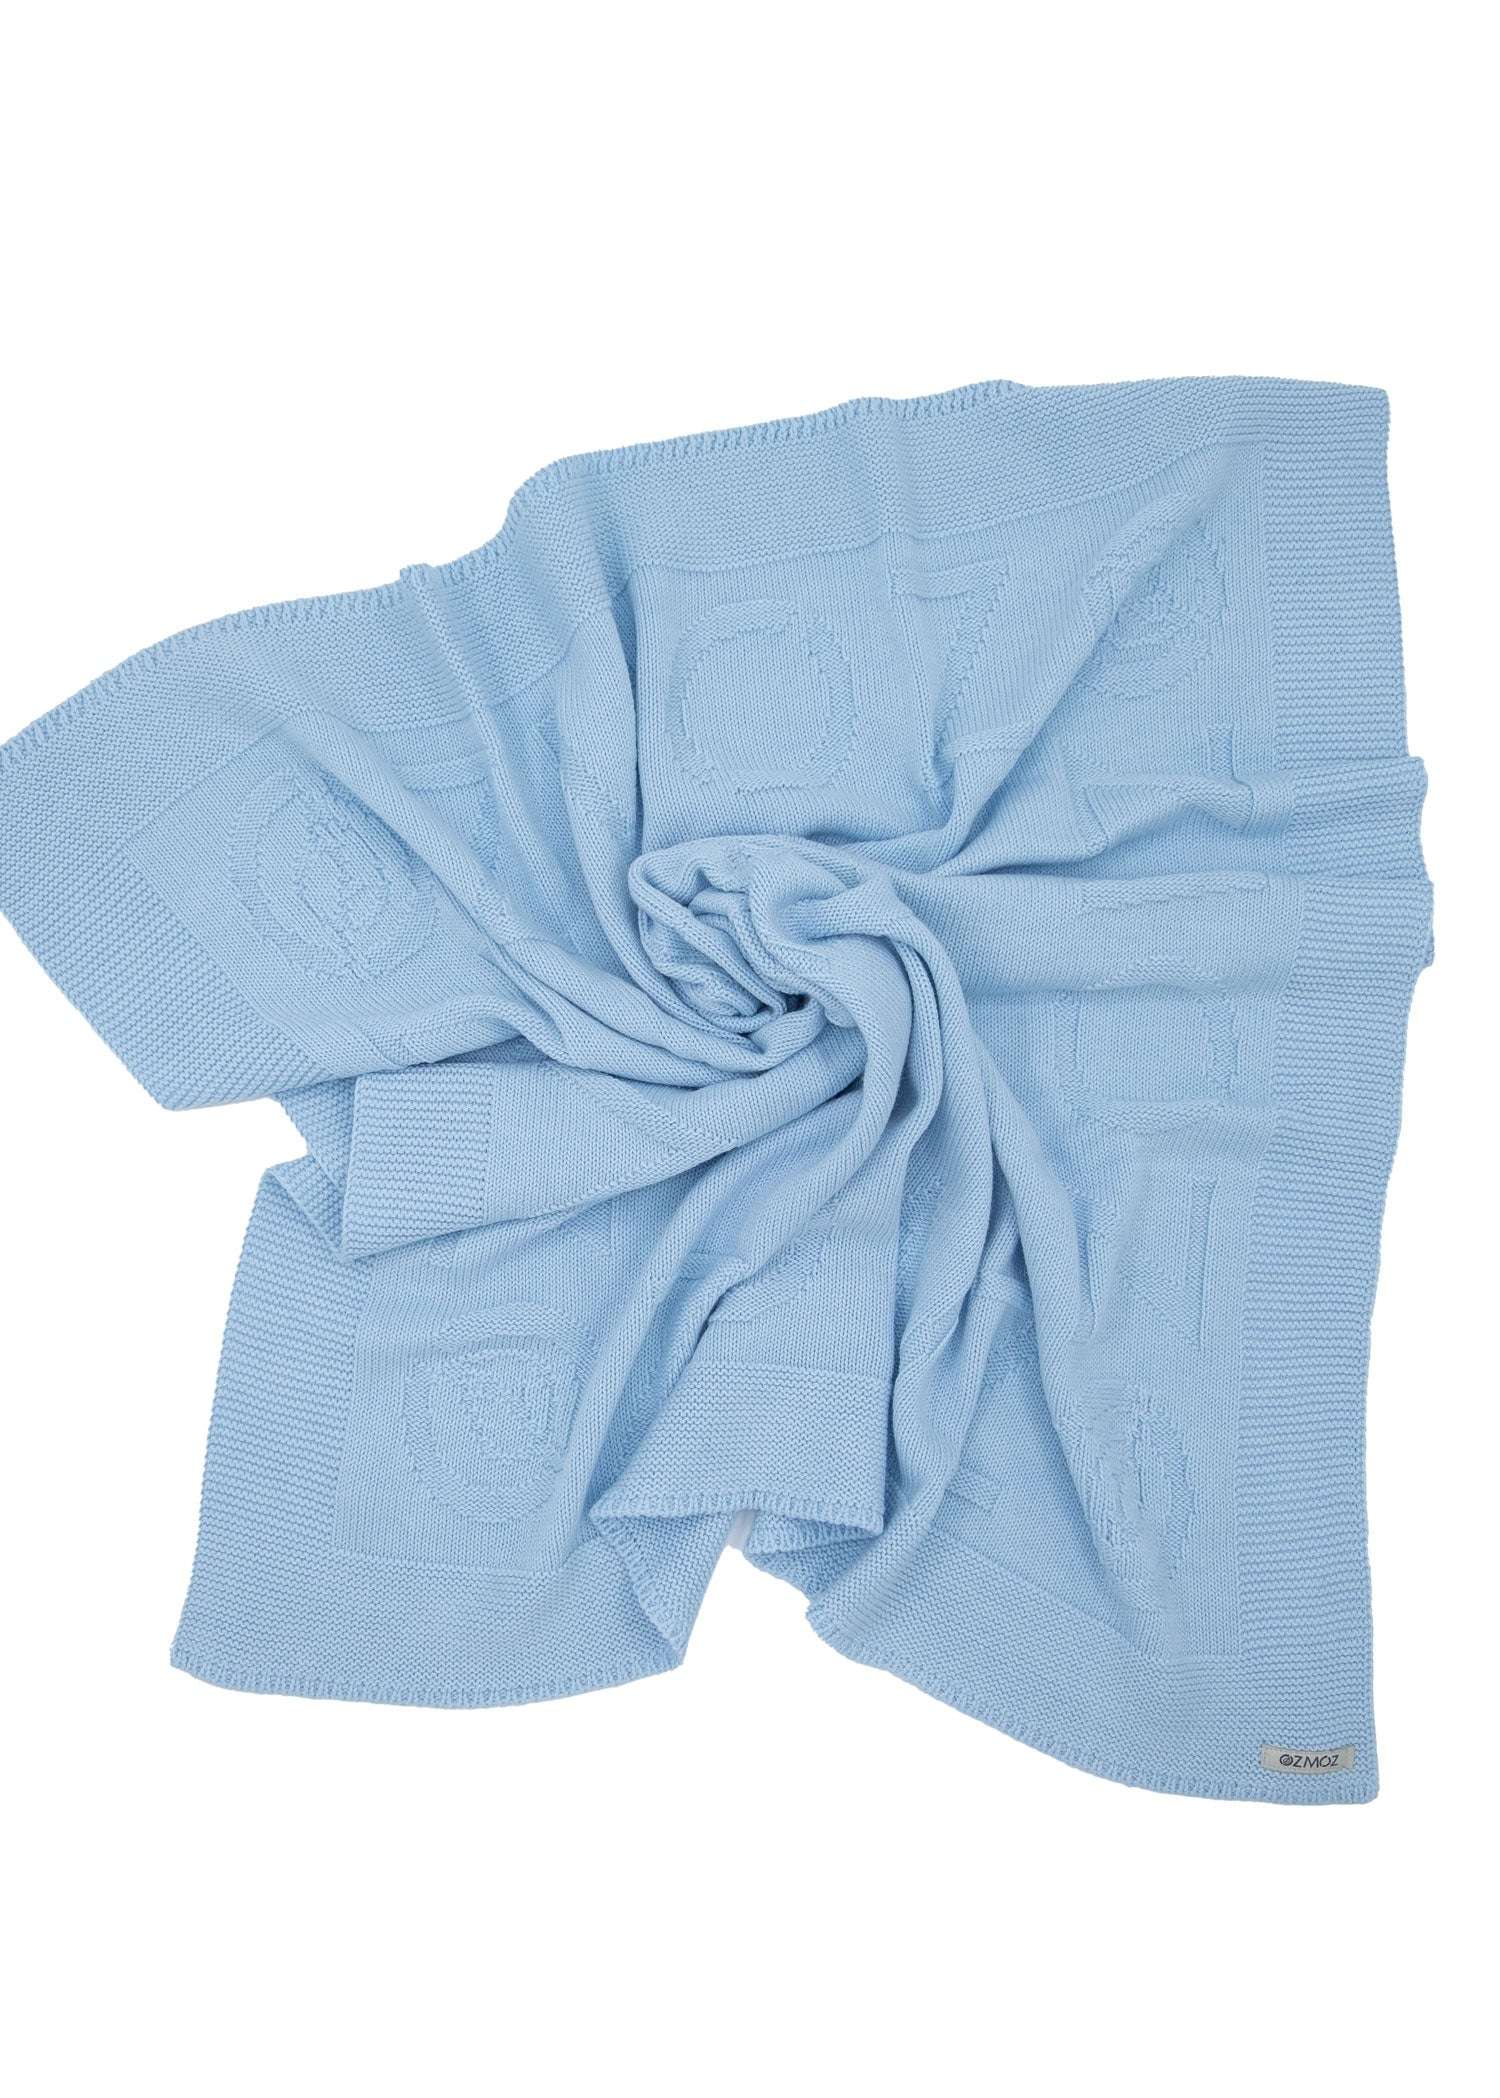 Organic Knitwear Baby Blanket Blue